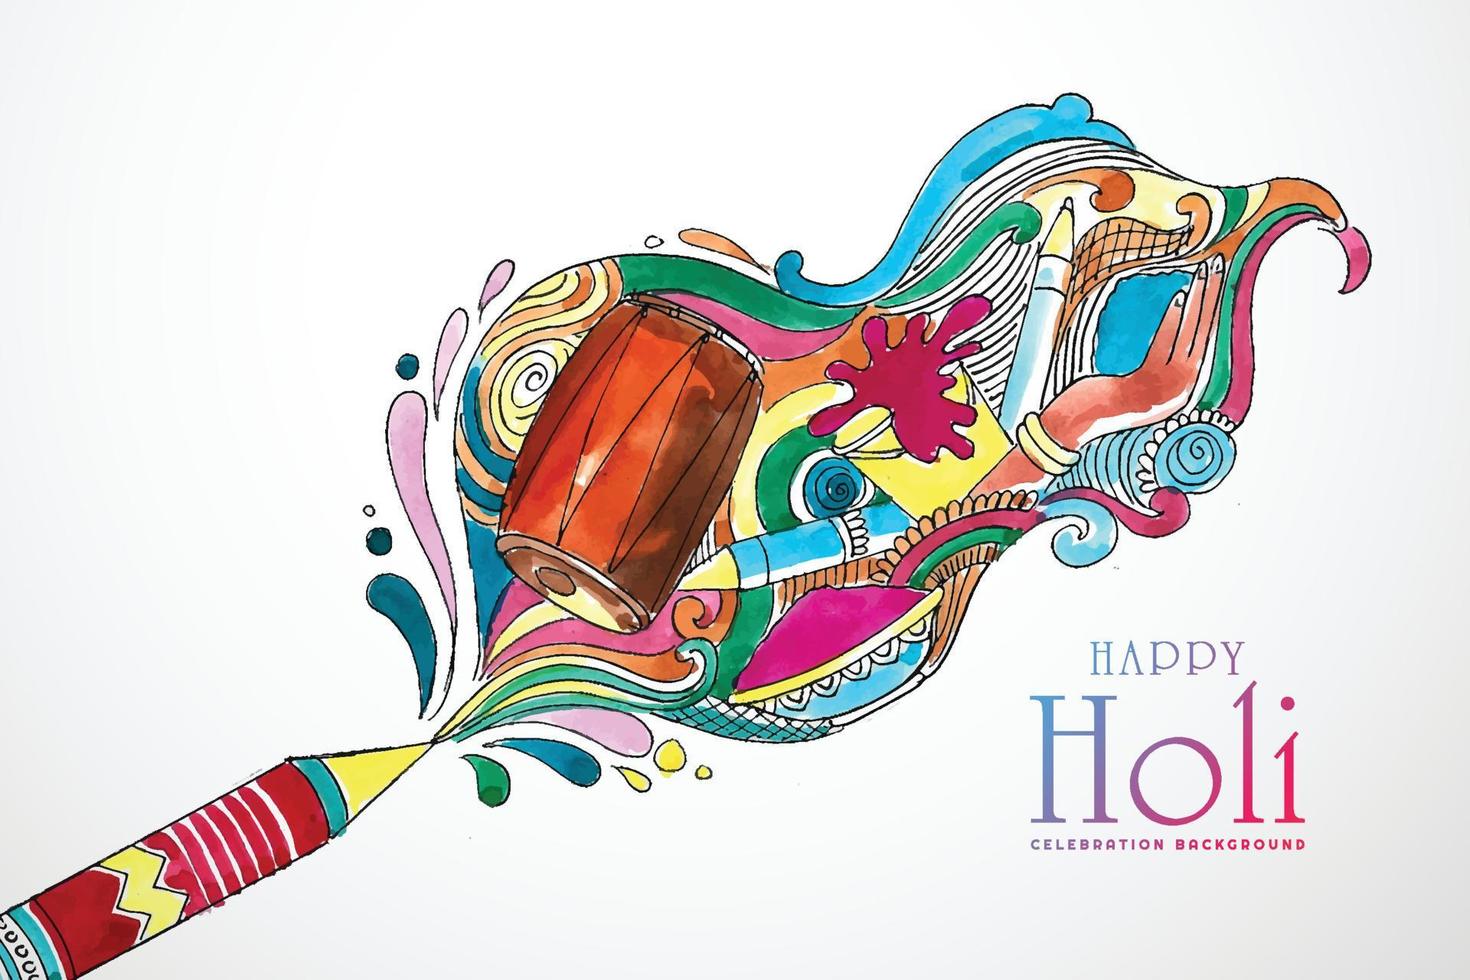 bellissimo doodle artistico per il design di carte colorate happy holi vettore